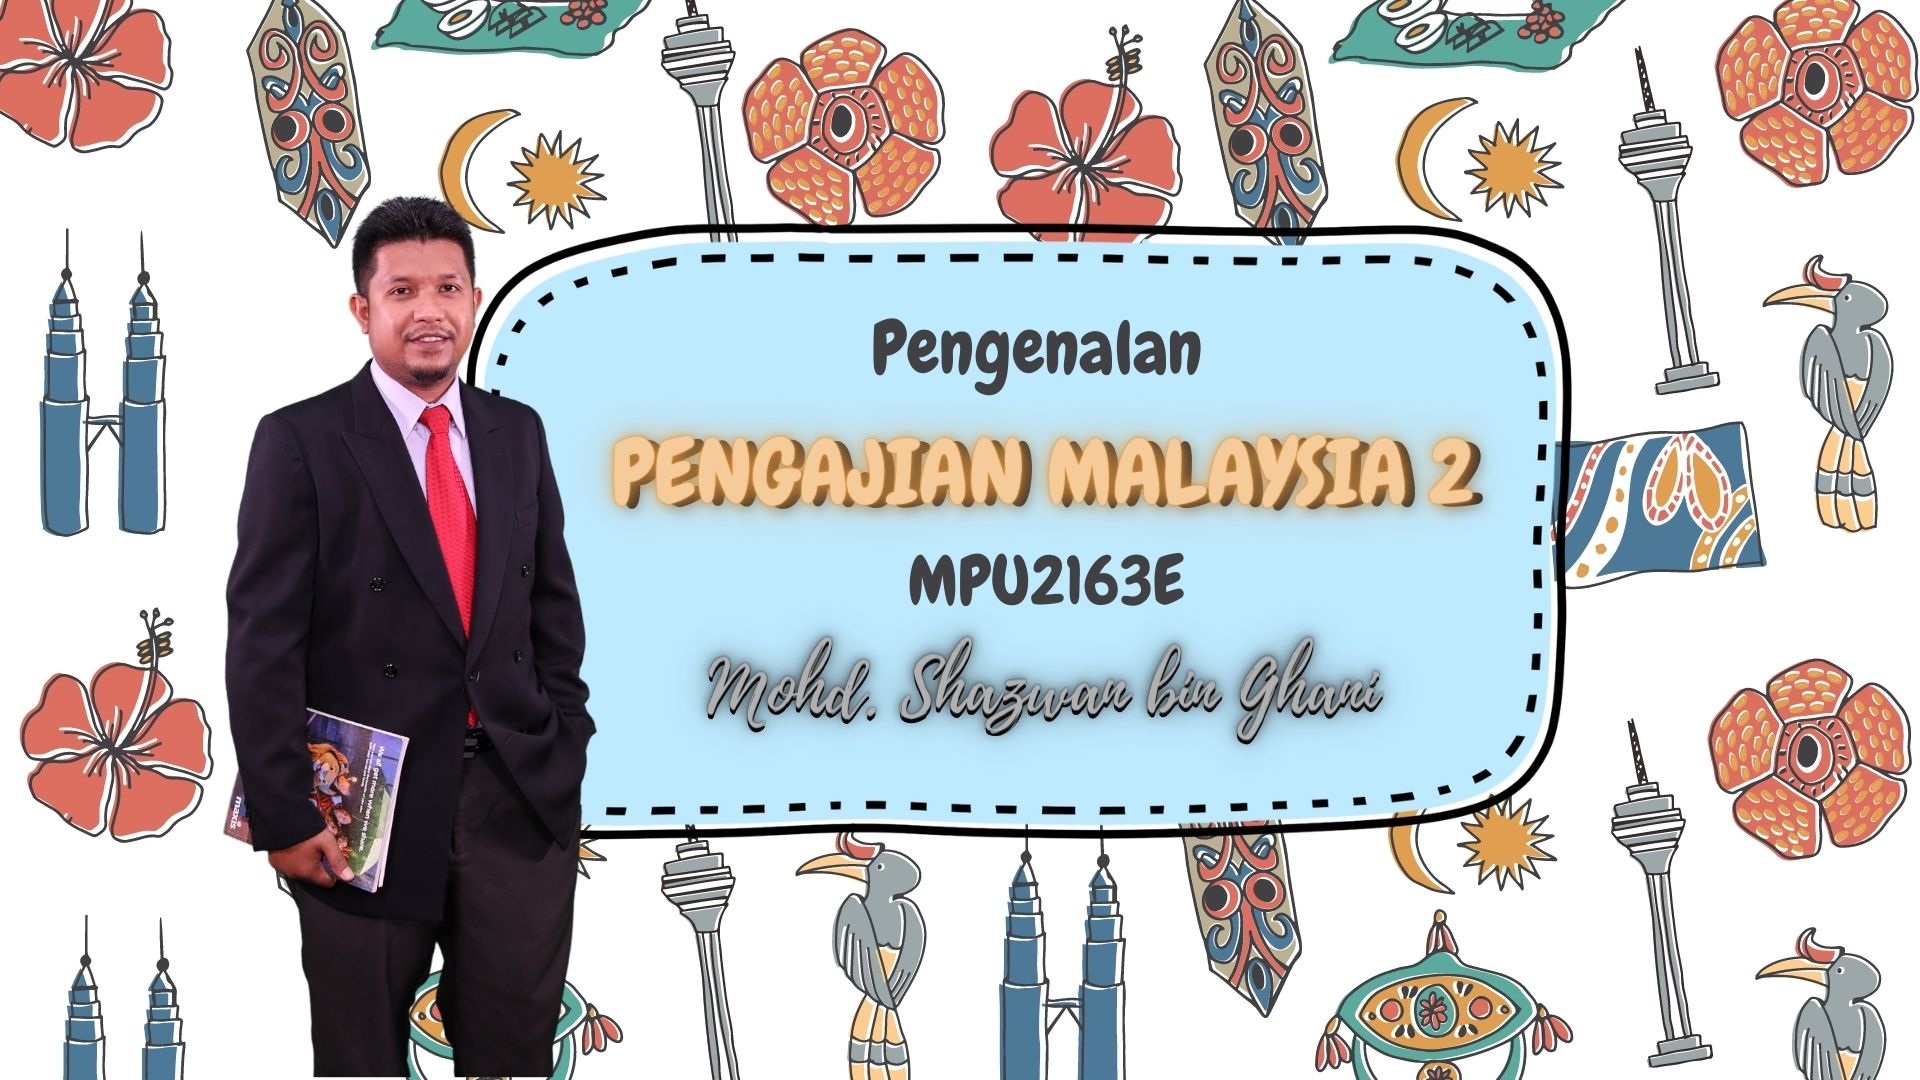 VIDEO PENGENALAN KURSUS MPU2163E - PENGAJIAN MALAYSIA 2